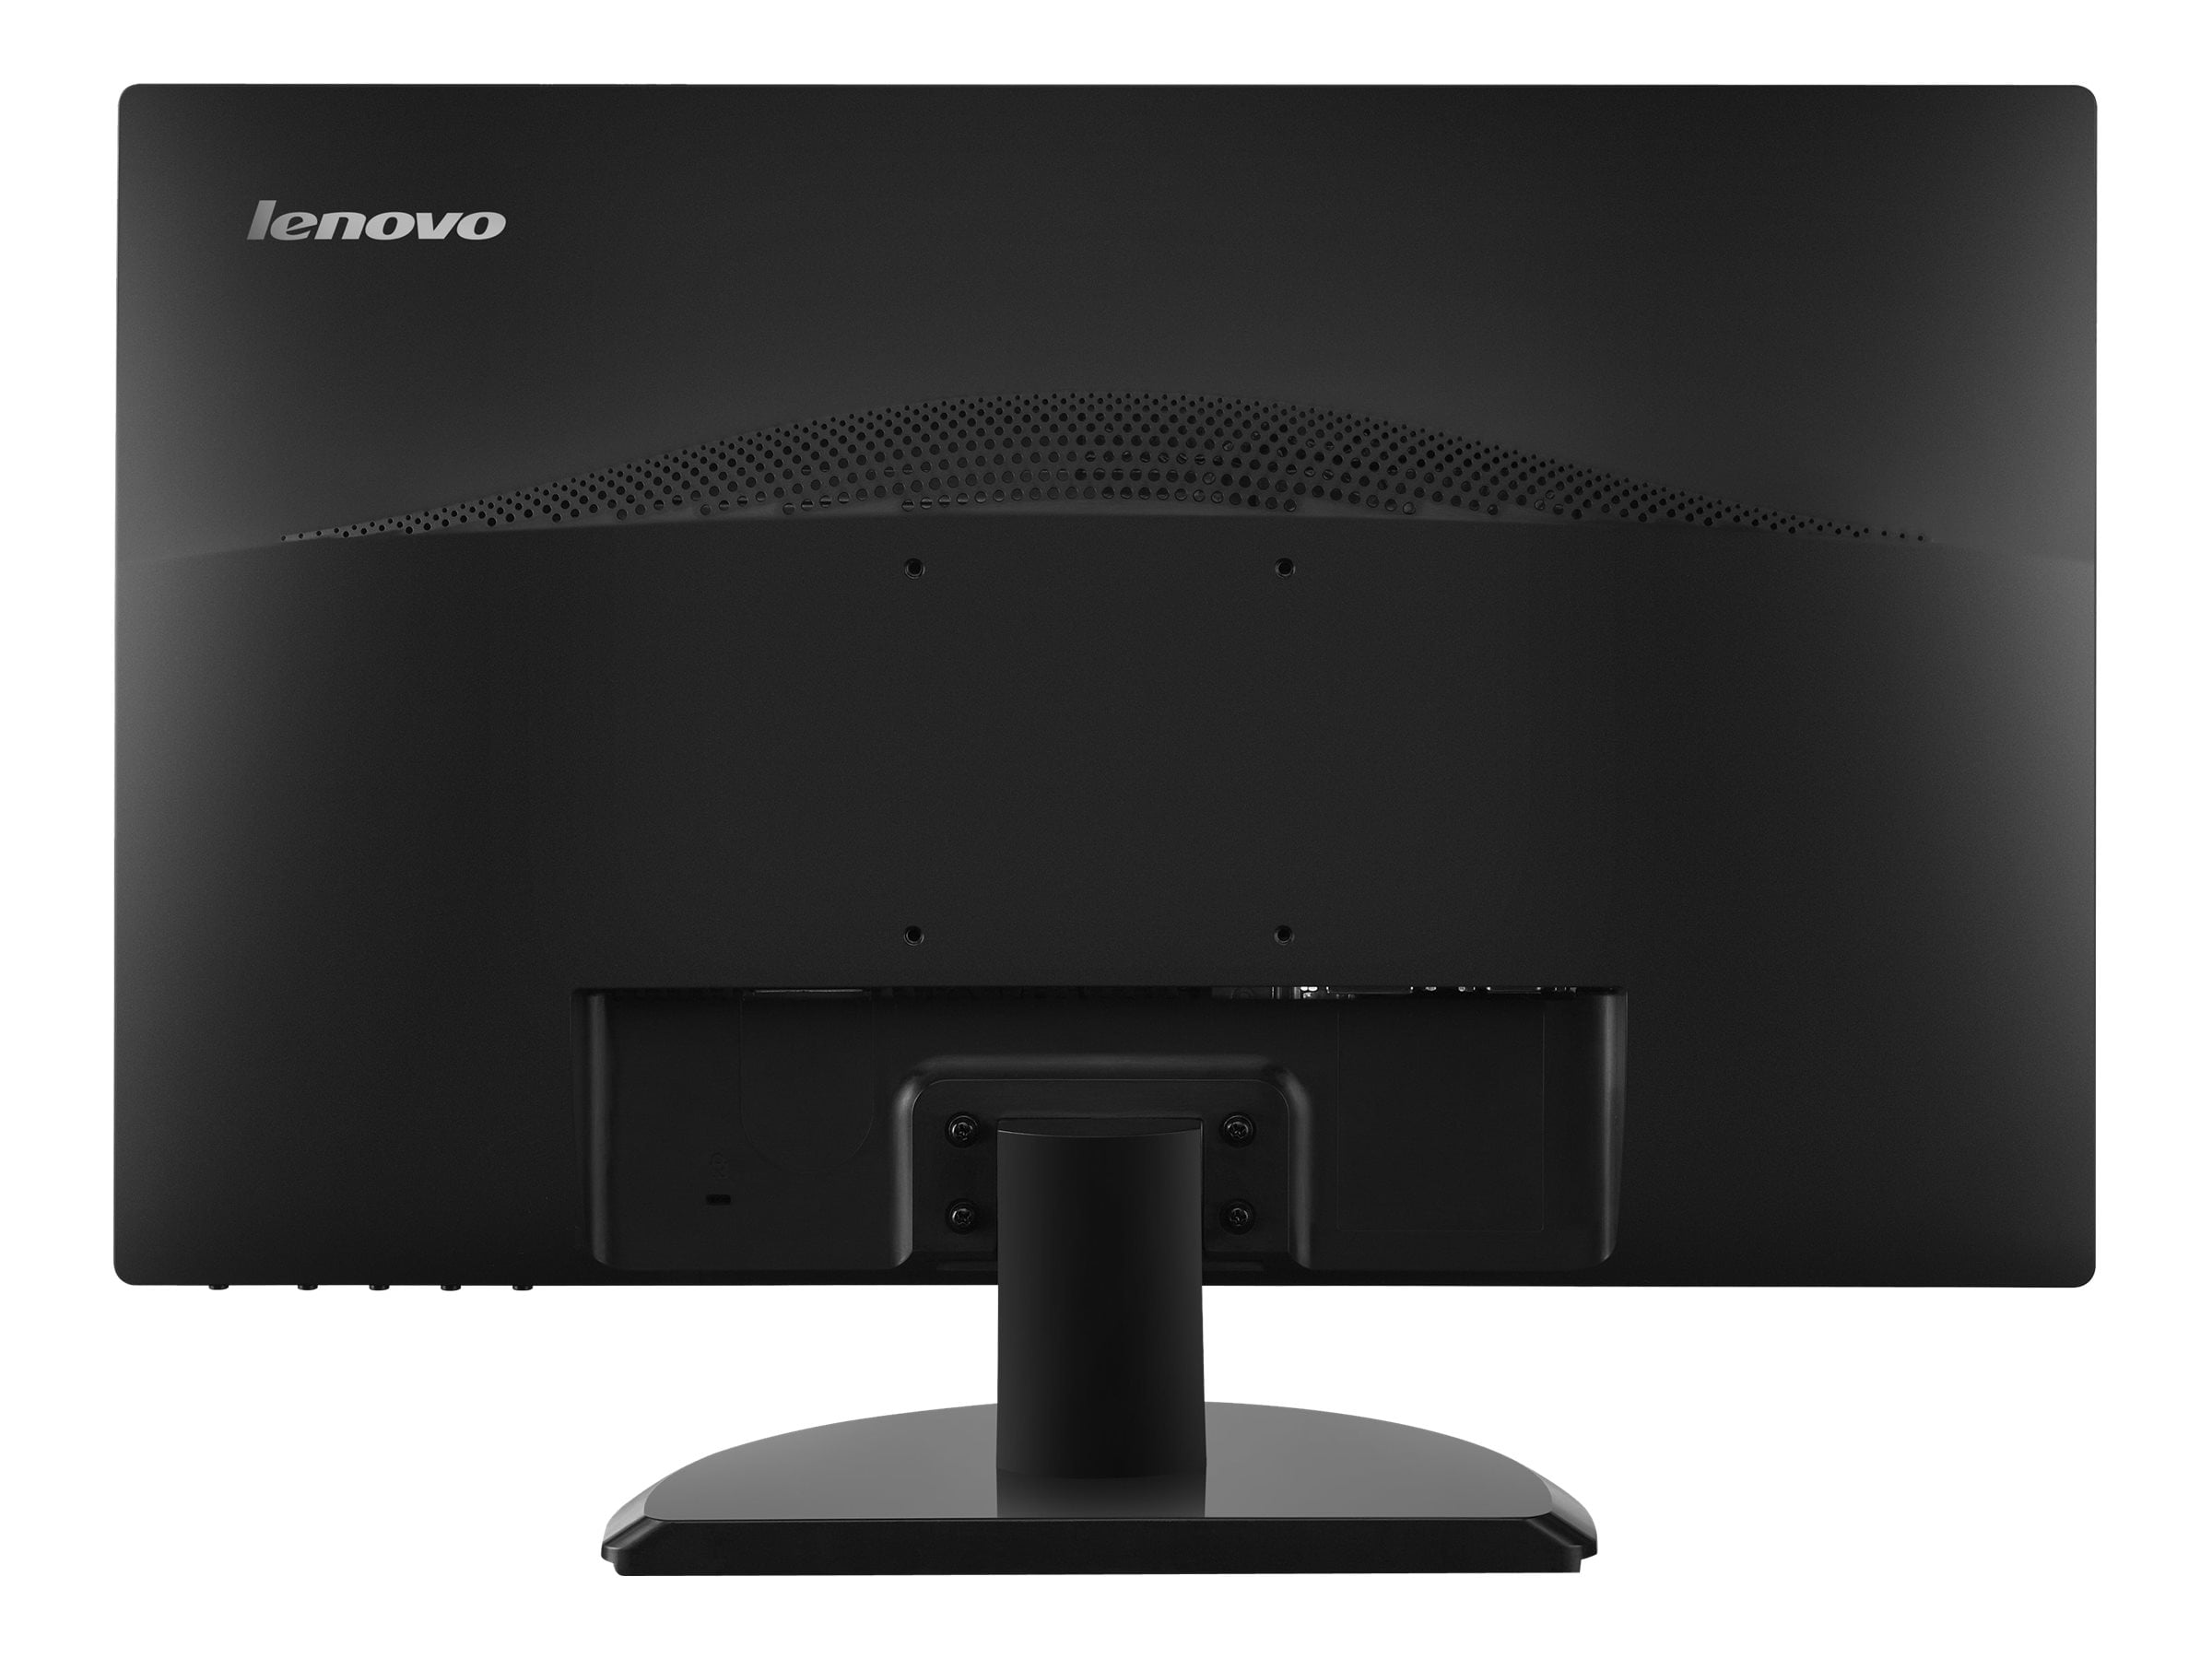 Lenovo ThinkVision E2223s - LED monitor - 21.5" - 1920 x 1080 Full HD  (1080p) @ 60 Hz - TN - 200 cd/m������ - 600:1 - 5 ms - DVI, VGA - business  black - Walmart.com